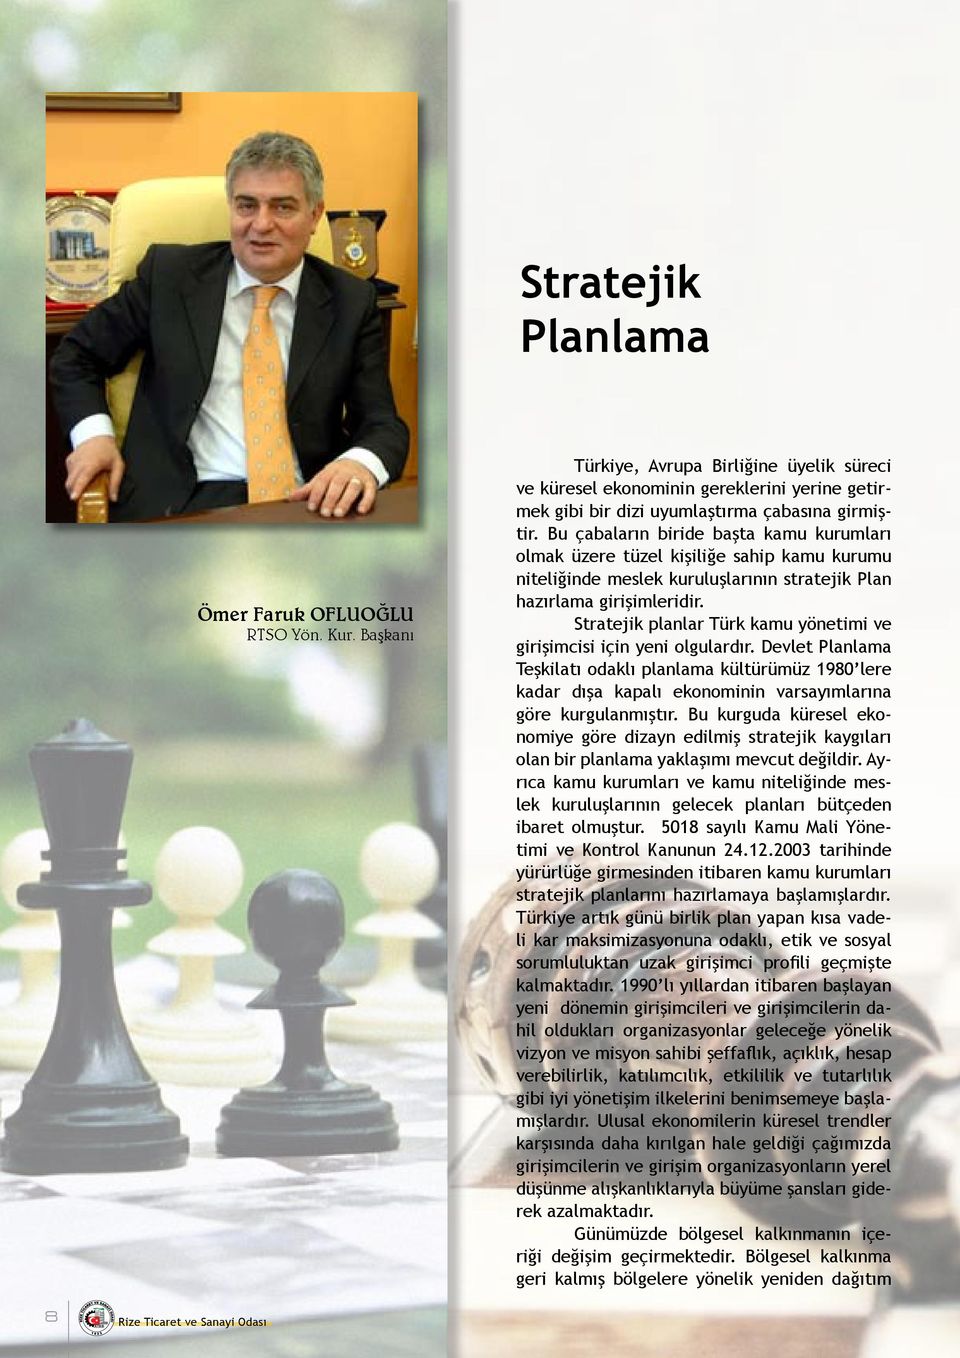 Stratejik planlar Türk kamu yönetimi ve girişimcisi için yeni olgulardır.